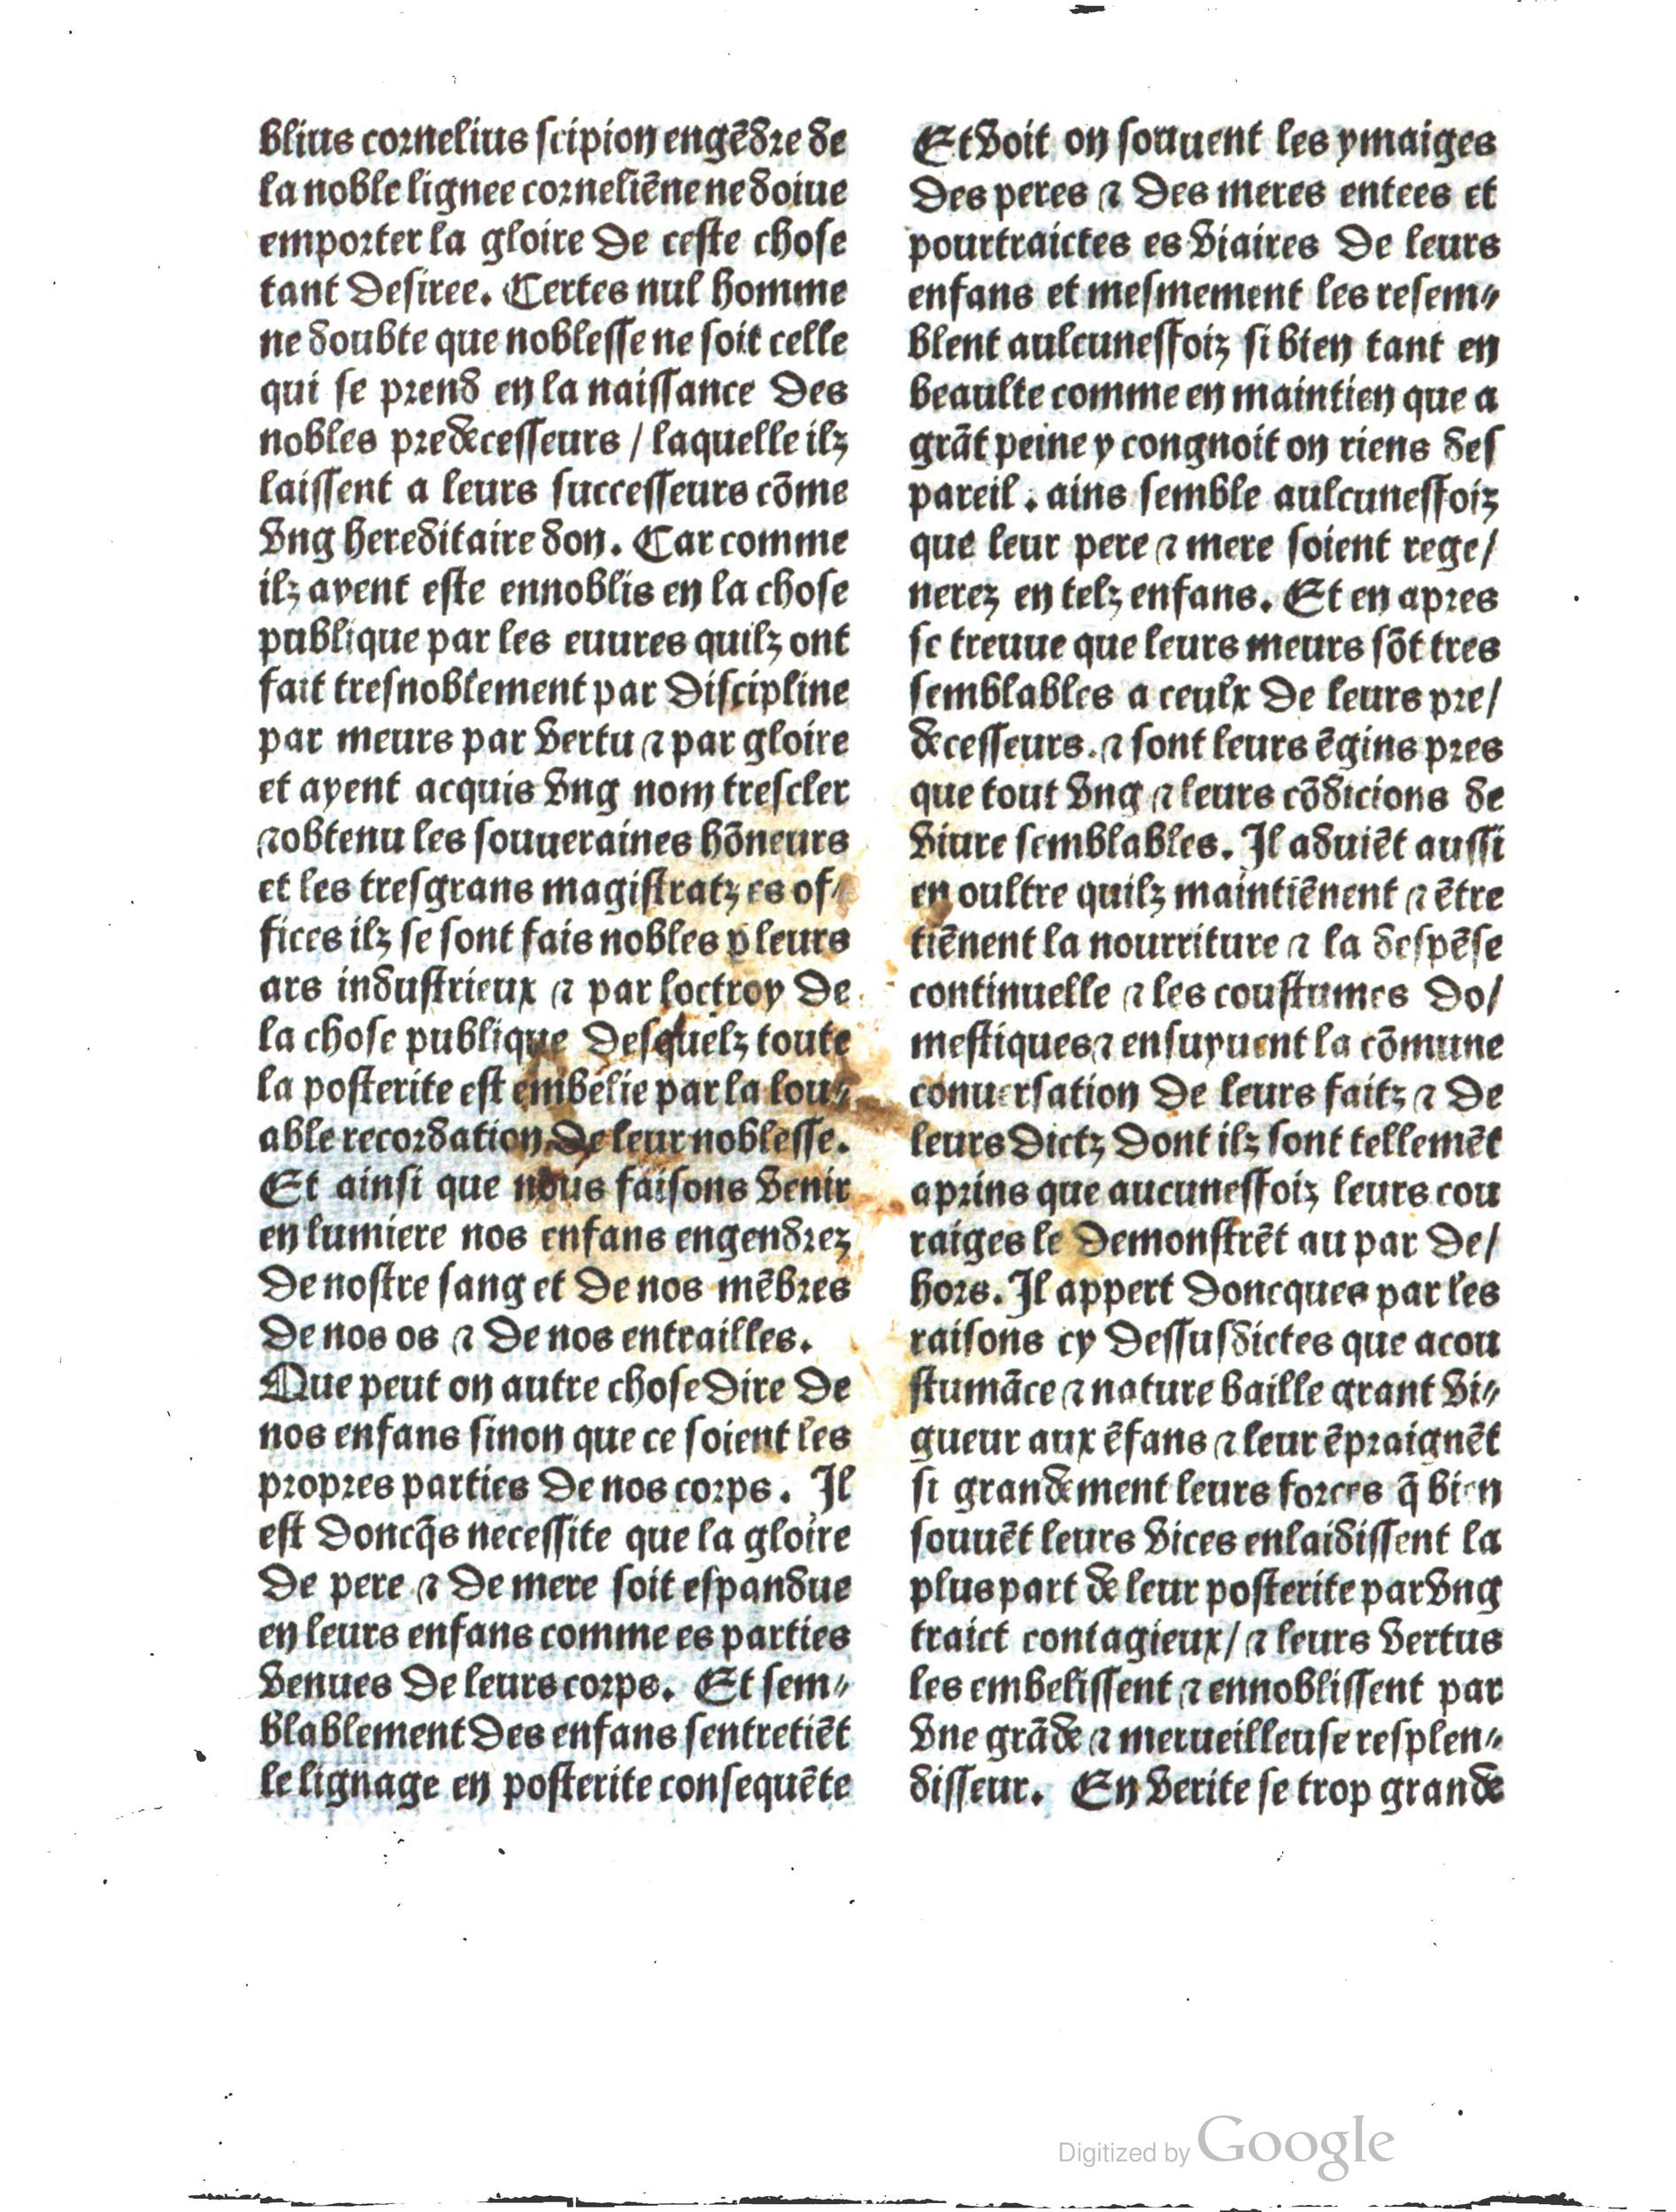 1497 Trésor de noblesse Vérard_BM Lyon_Page_098.jpg